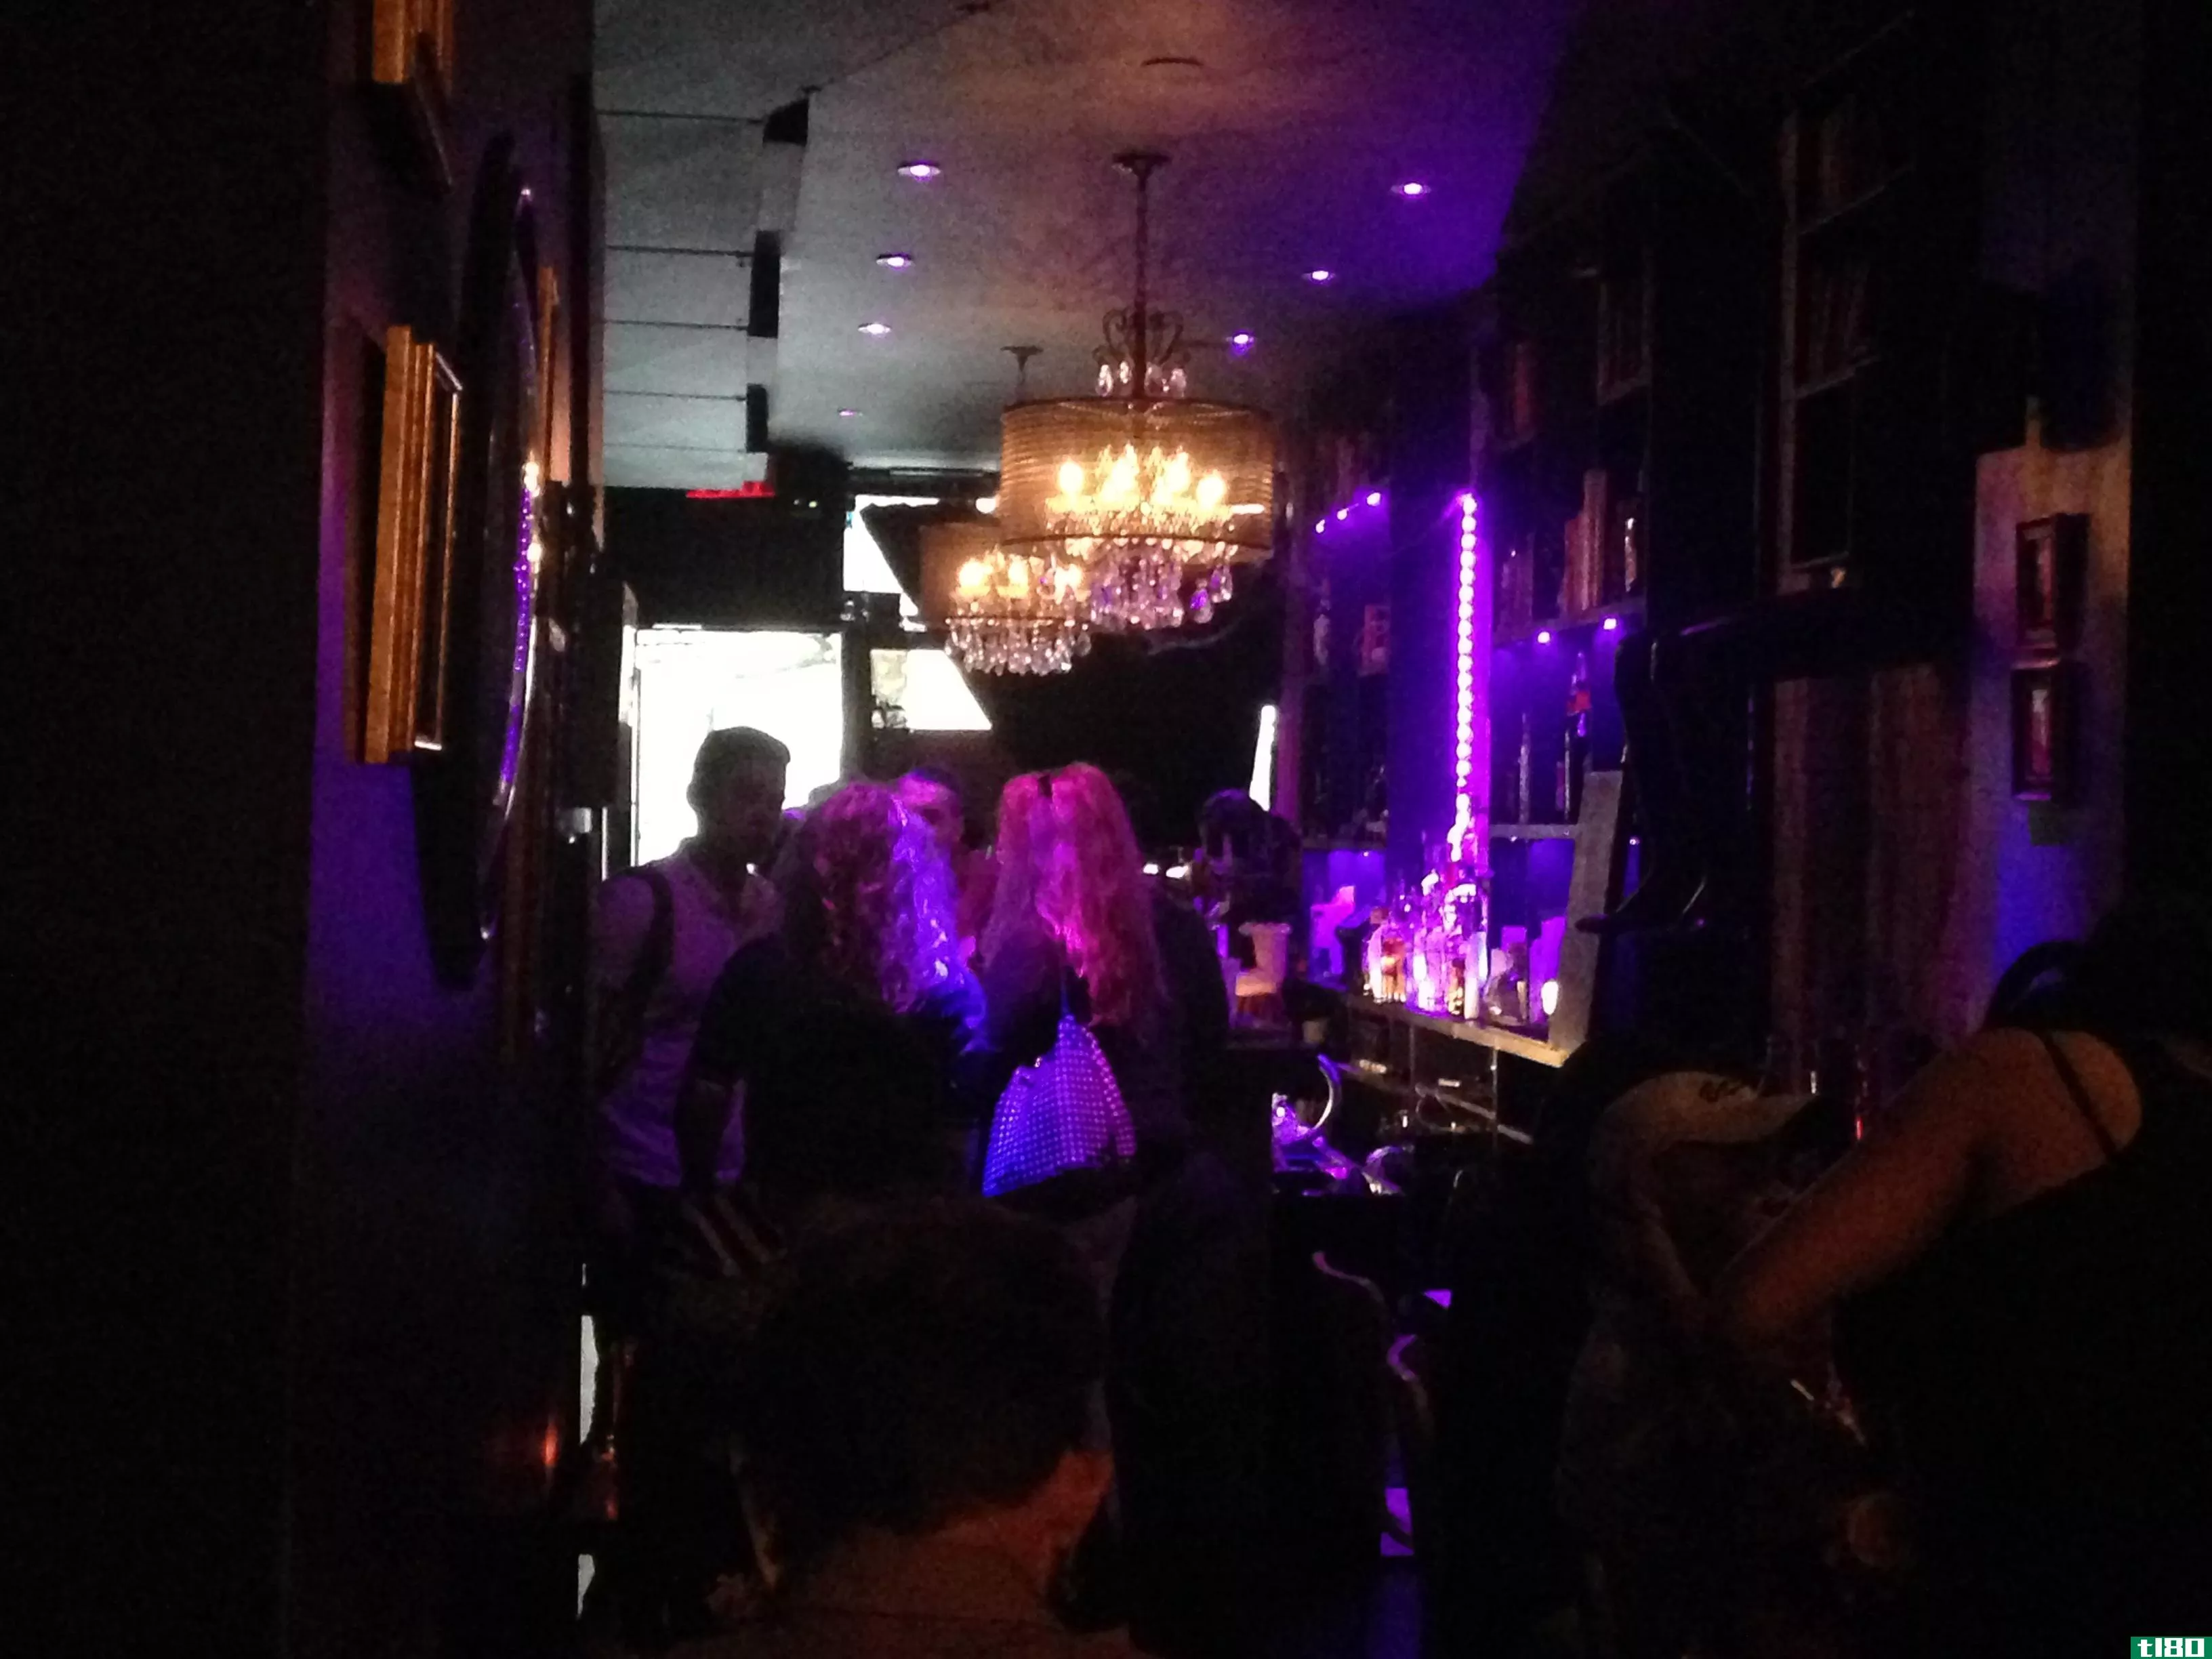 甲壳虫汁，甲壳虫汁，甲壳虫汁：纽约蒂姆伯顿主题酒吧的夜晚